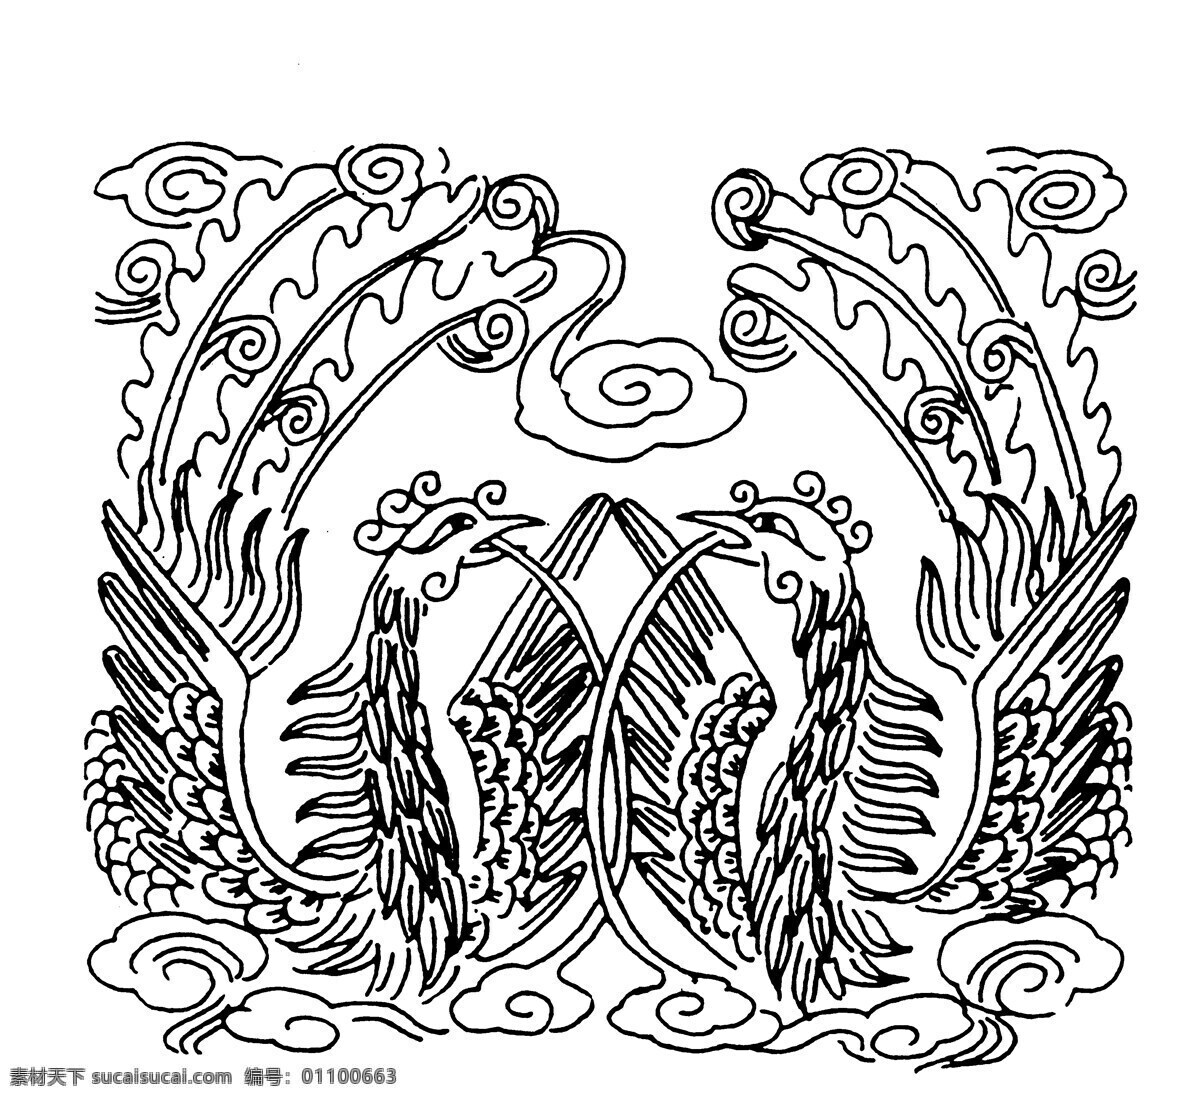 龙凤图案 清代图案 中国 传统 图案 147 设计素材 龙凤图纹 装饰图案 书画美术 白色